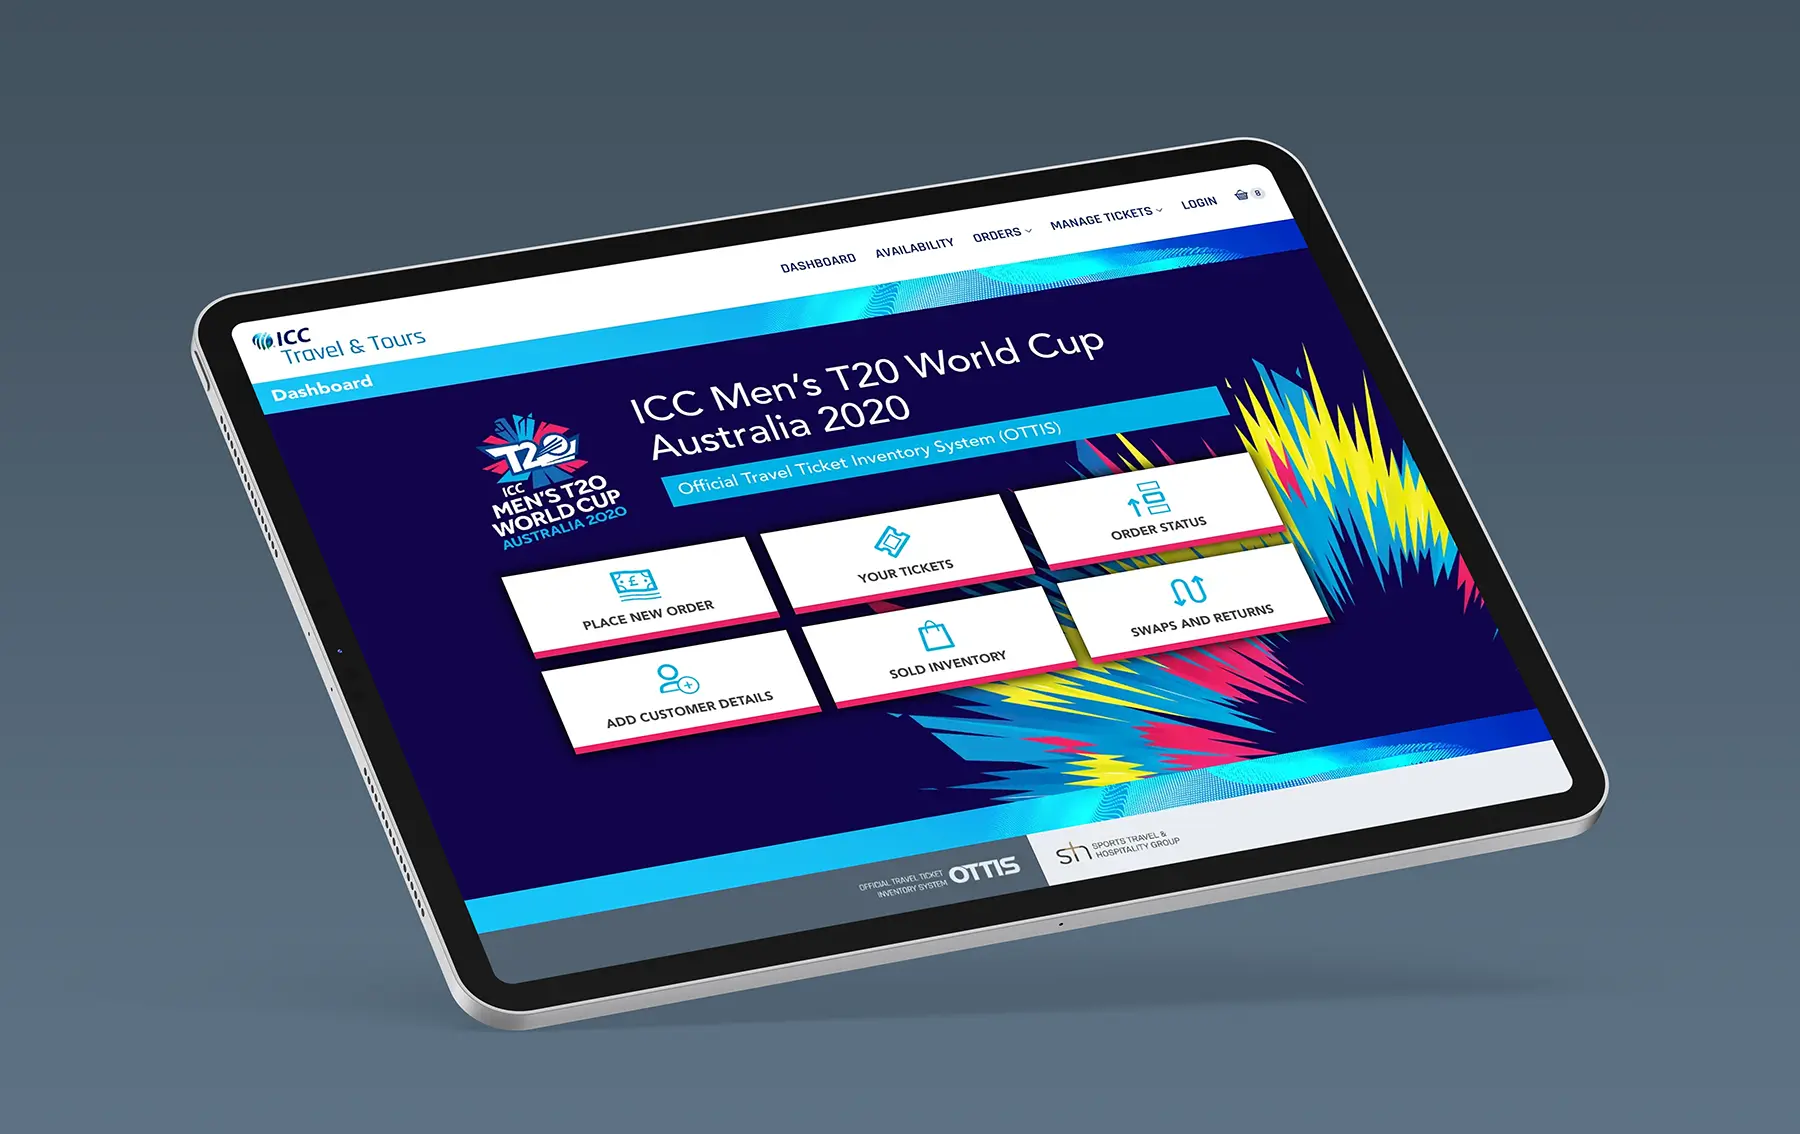 ICC T20 World Cup ticket website dashboard iPad